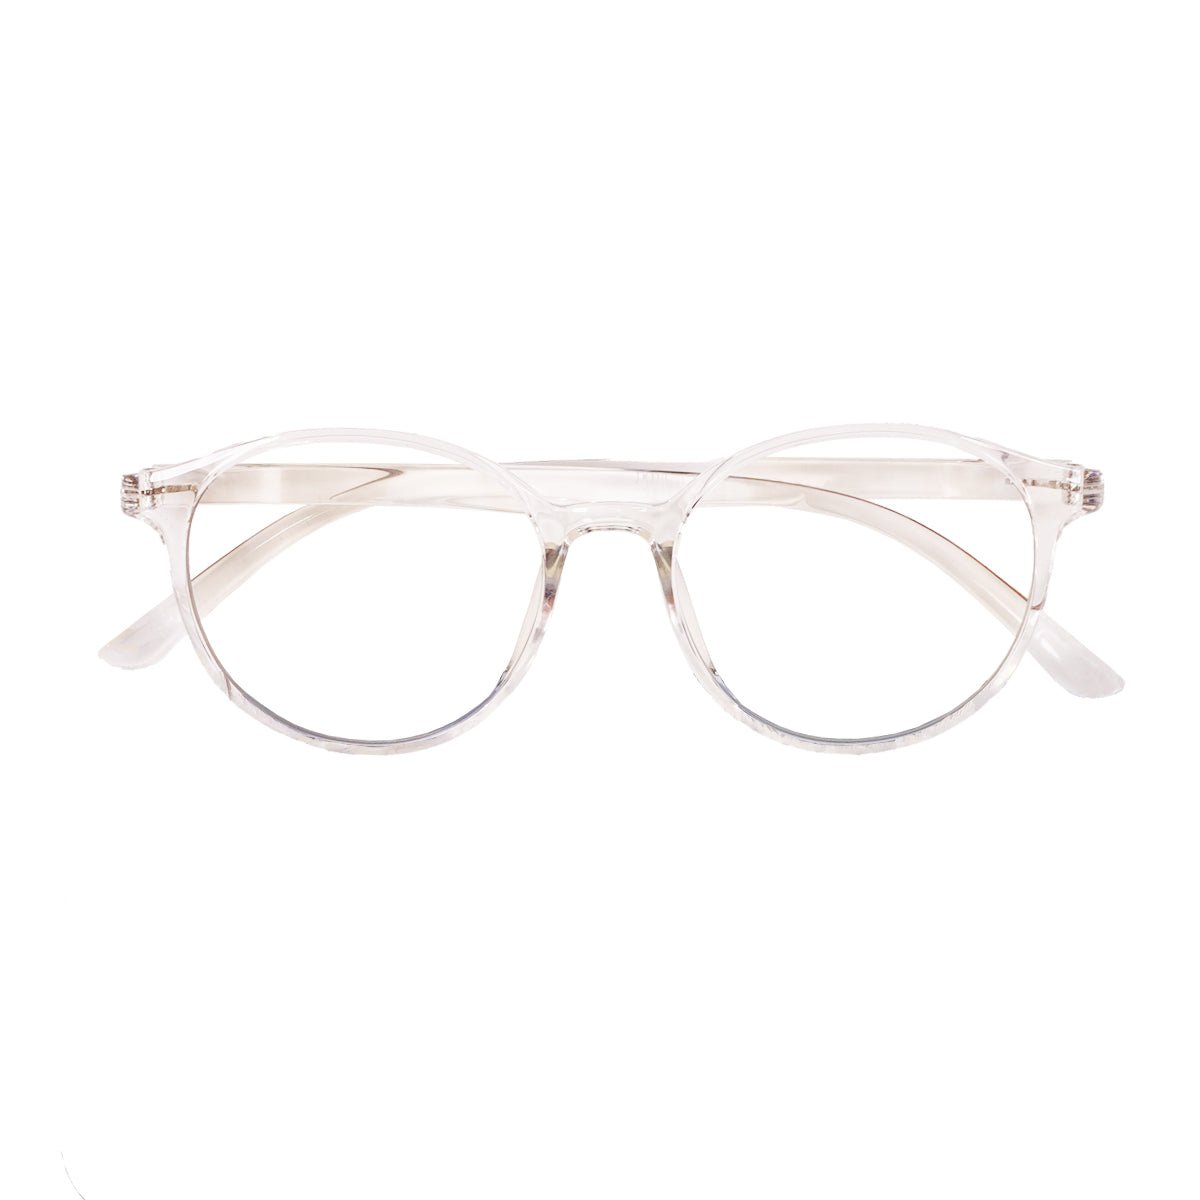 Epic Gamers Glasses V3 - Transparent White - Store 974 | ستور ٩٧٤